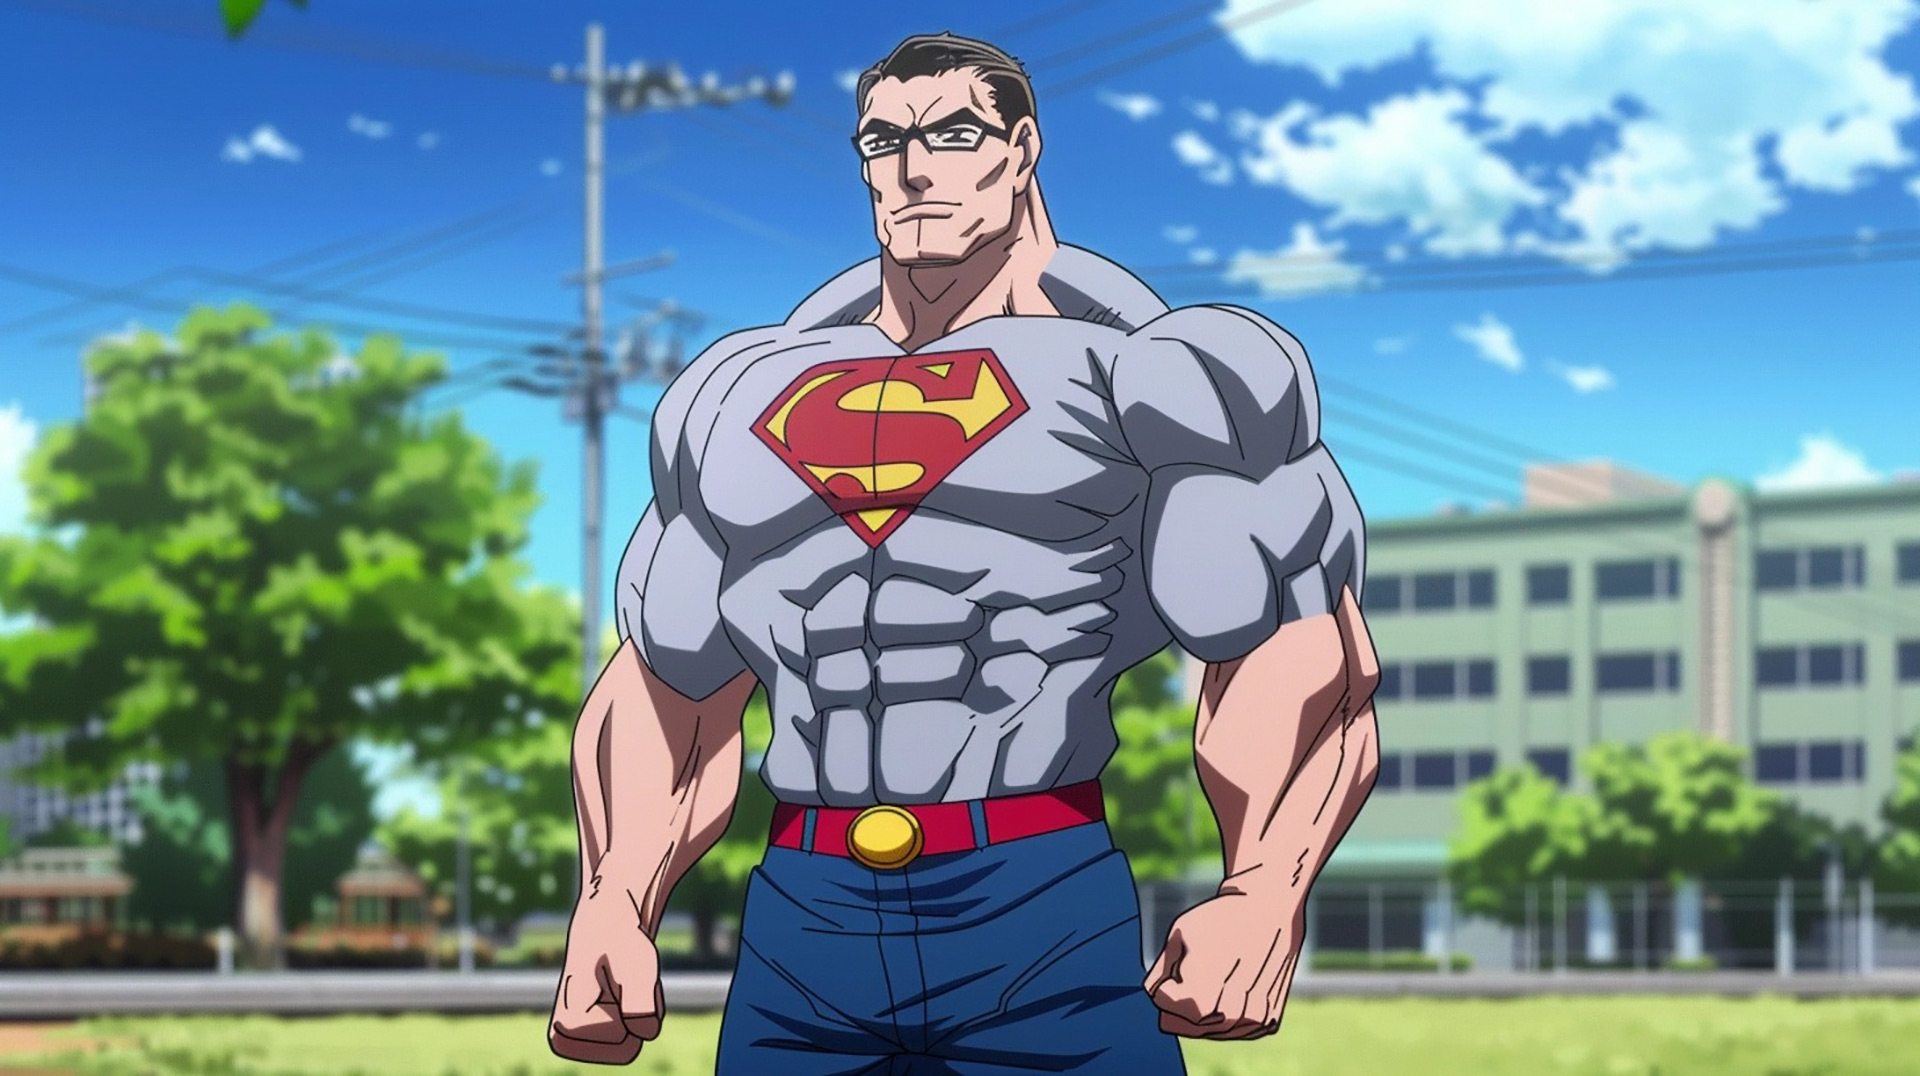 Anime Justice League: Superman Anime 8K Digital Art